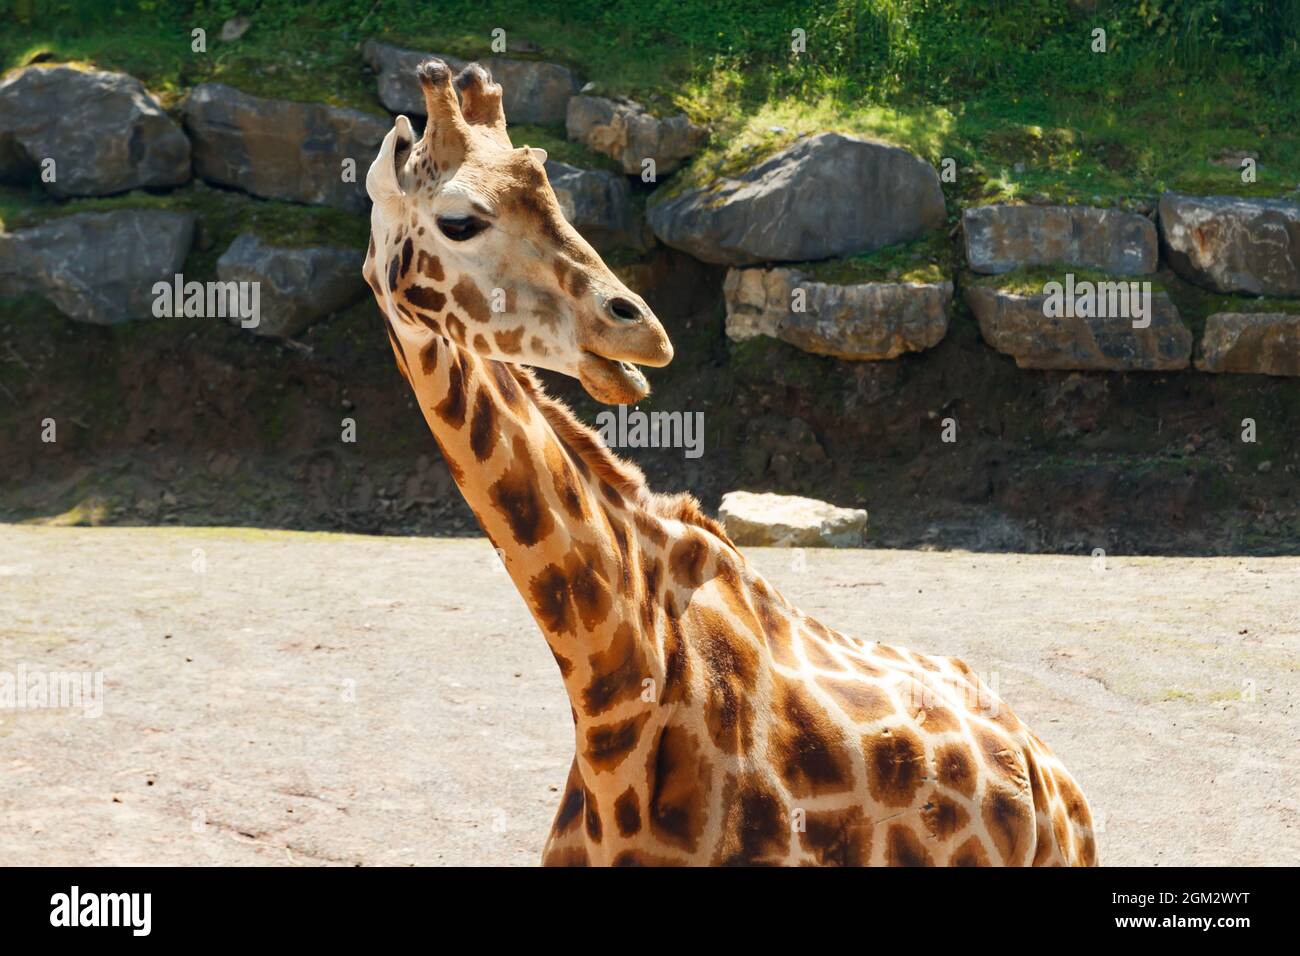 Wunderschöne Giraff, die im Sommer im Park spazieren gehen Stockfoto